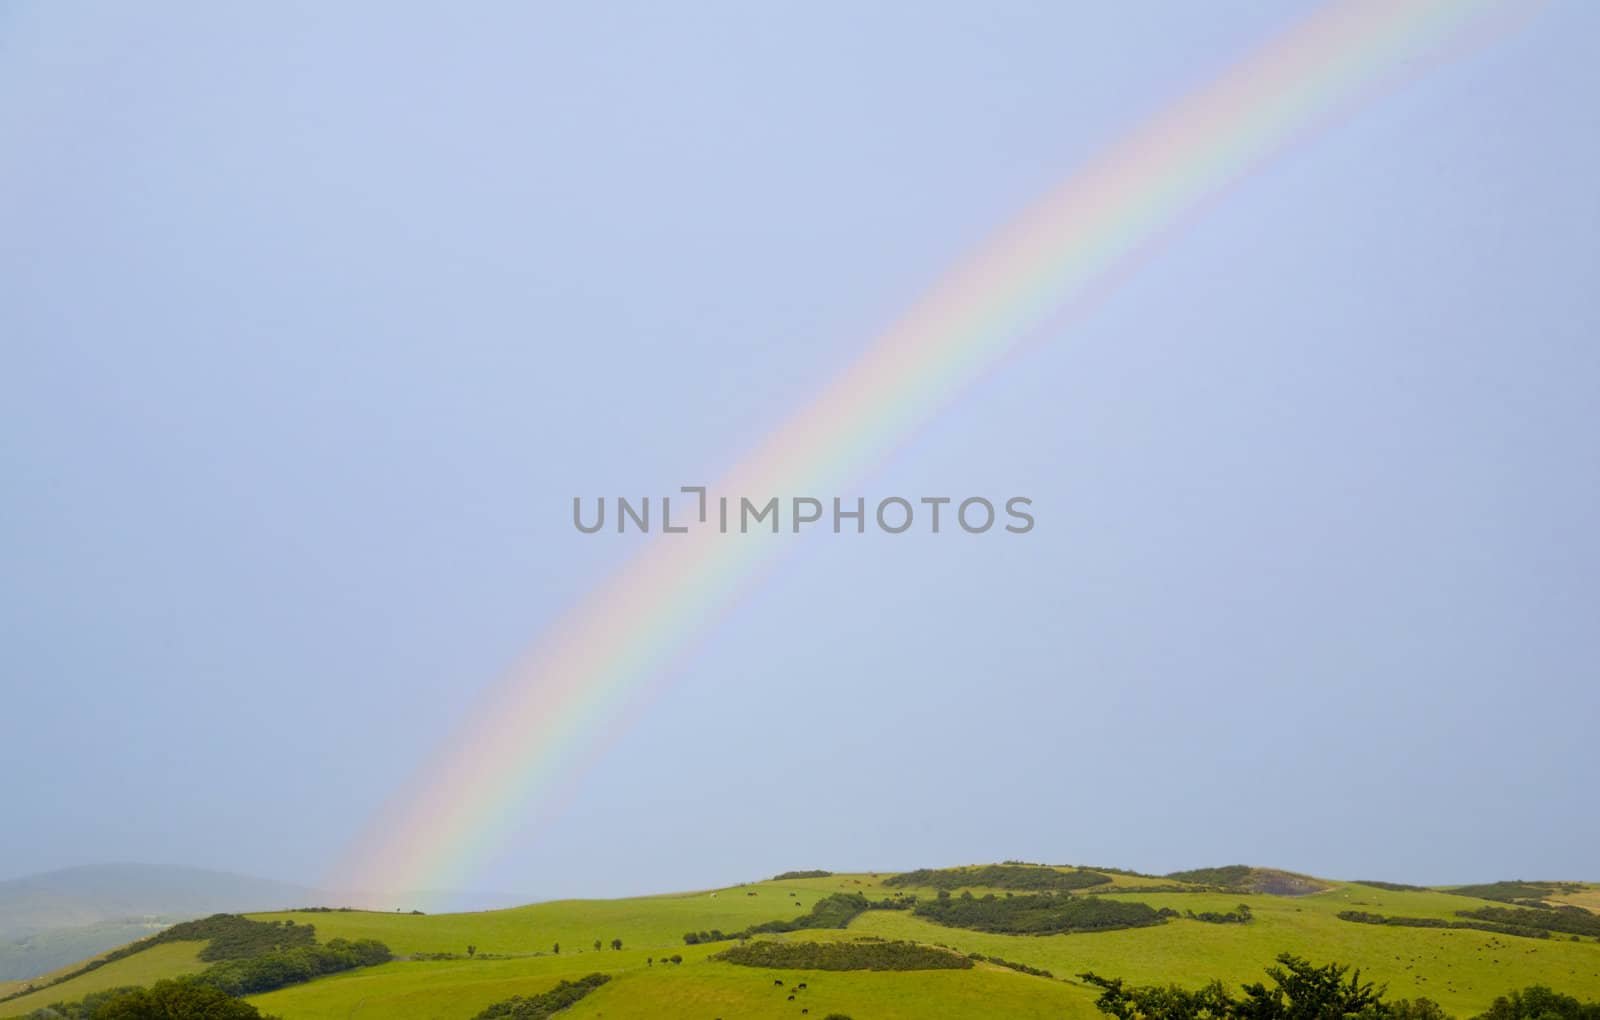 A rainbow over a lovely rural scene